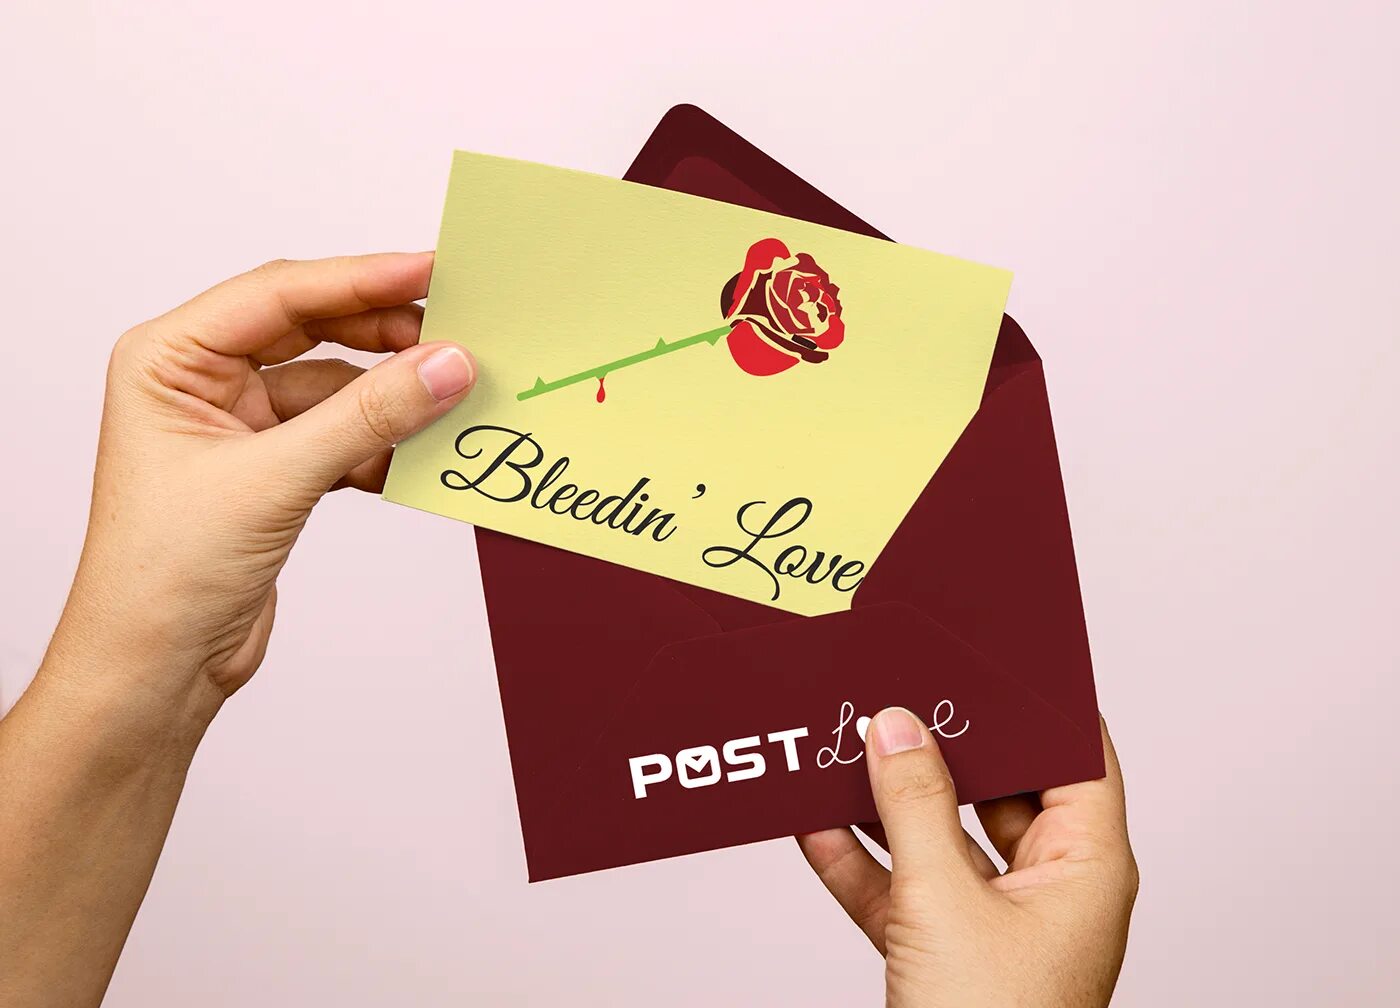 Postcard. Postcard Design. Card & Envelope. Post Card.